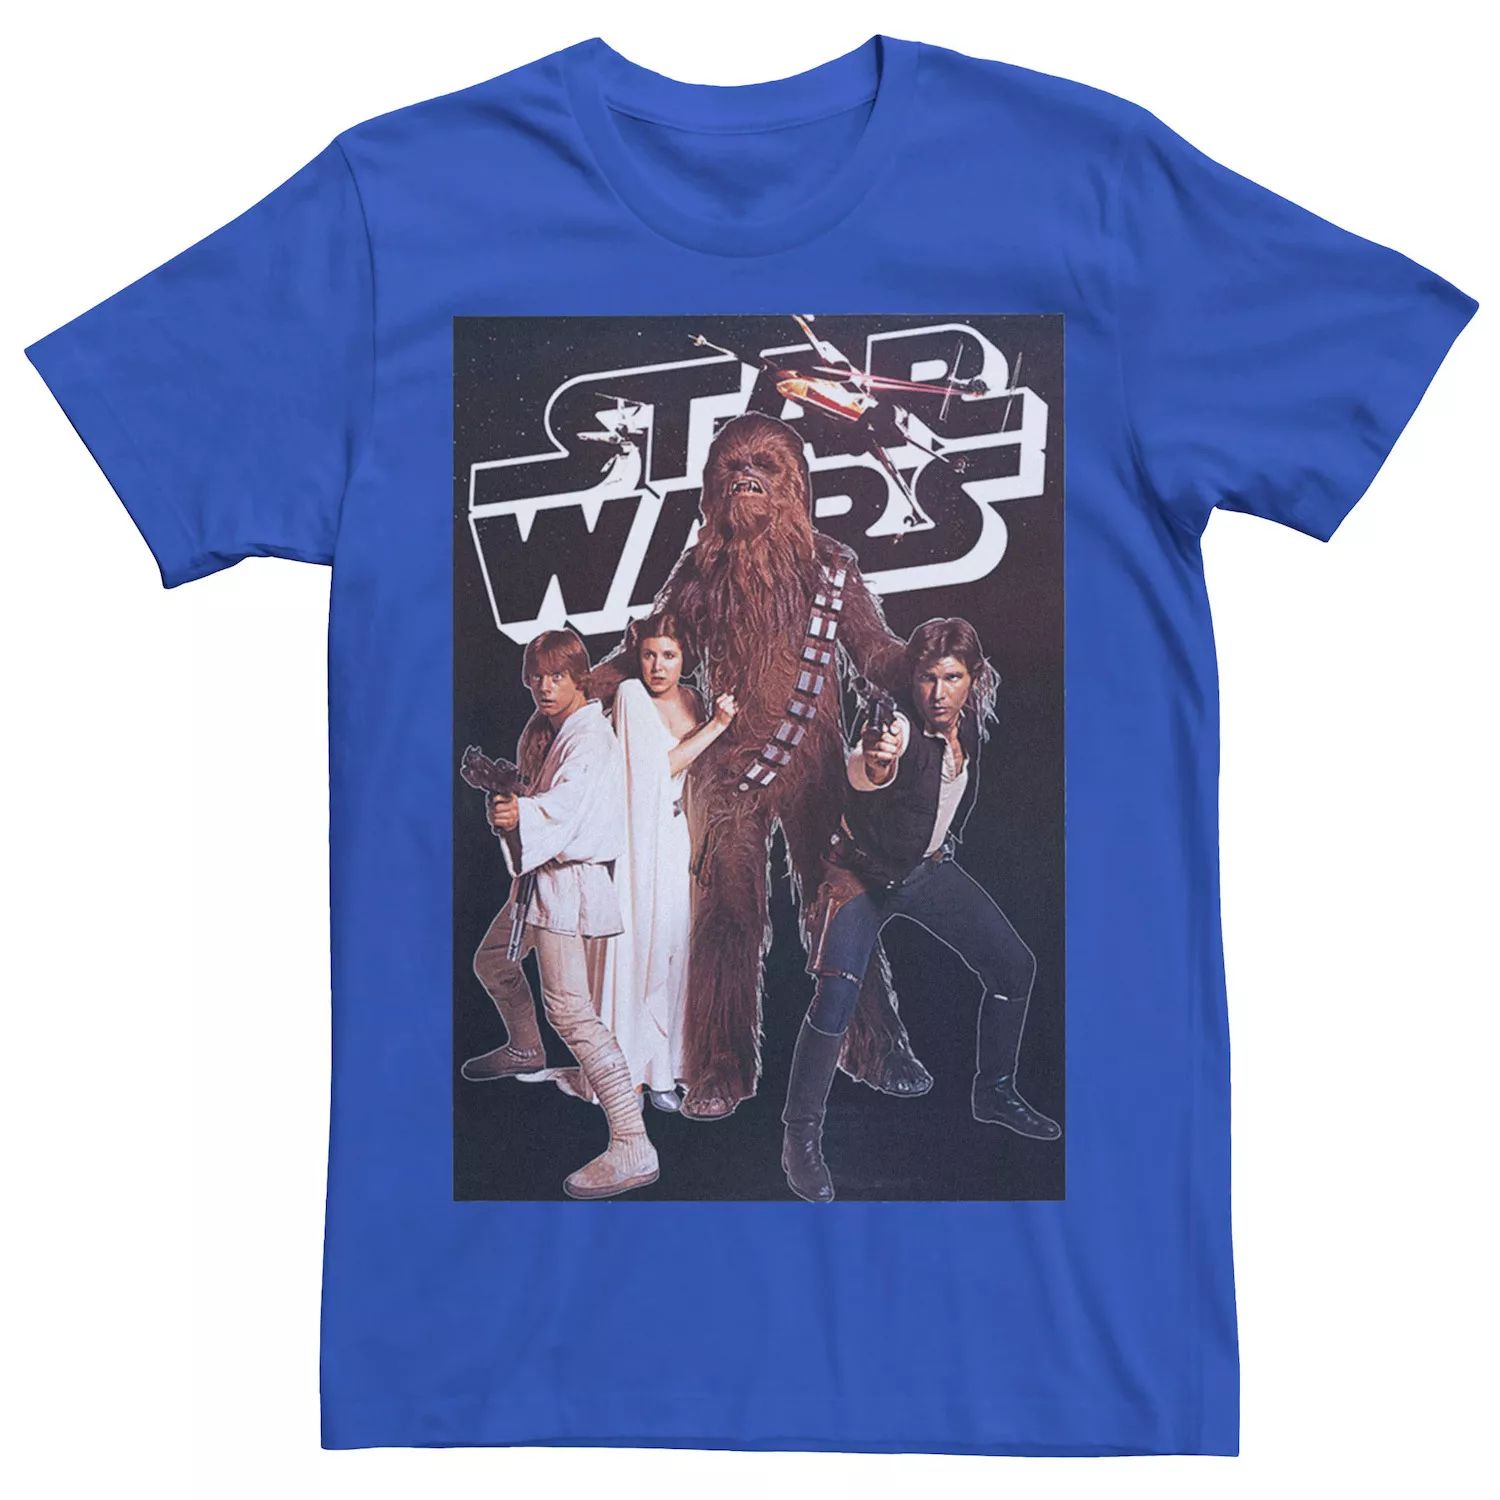 Мужская винтажная футболка с плакатом для группы Star Wars цена и фото